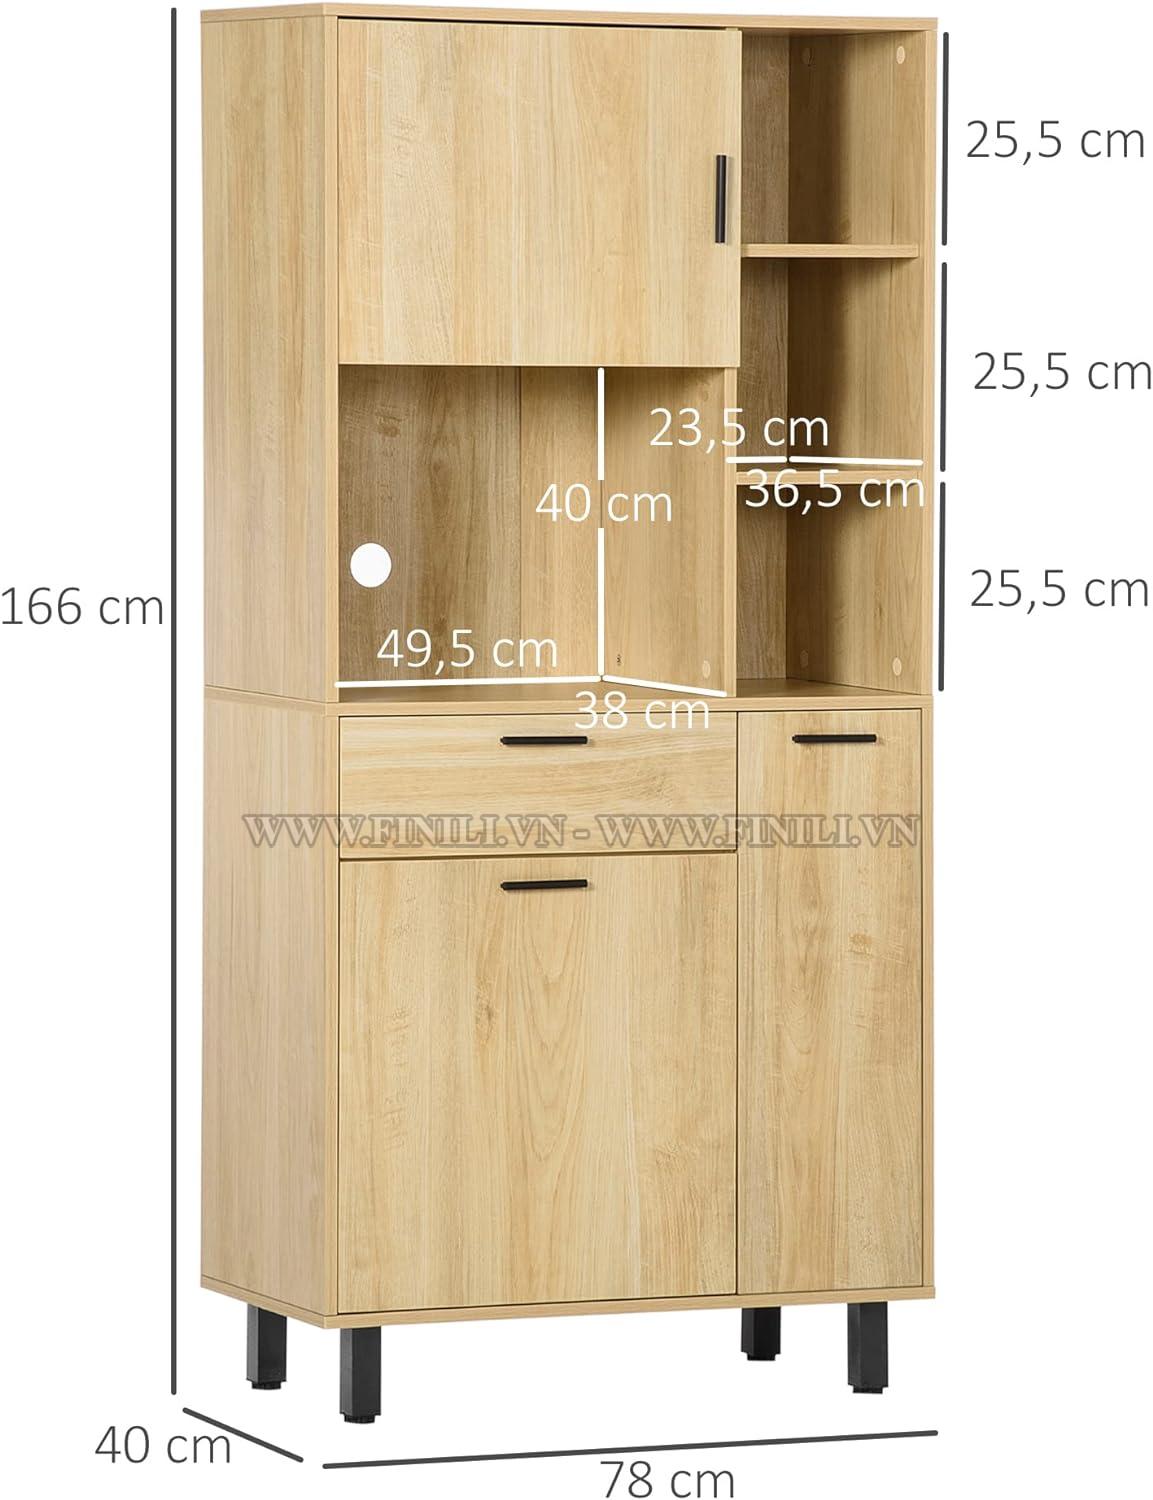 Mẫu tủ bếp được giữ nguyên màu sắc của gỗ sồi tự nhiên, đem đến cảm giác ấm áp